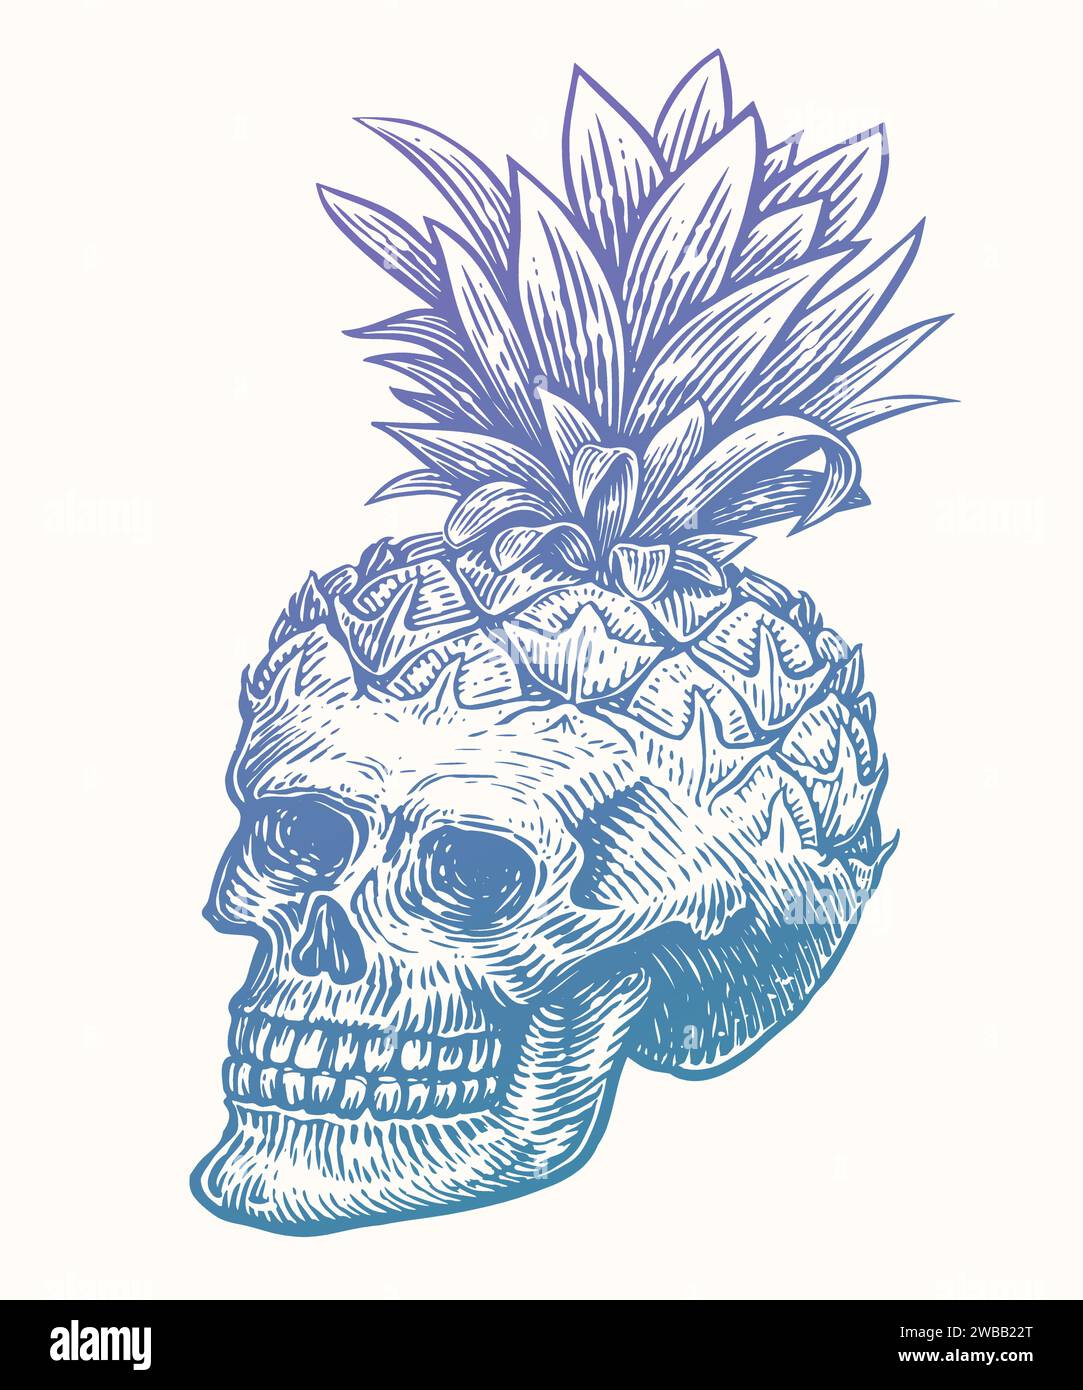 Ananas del cranio umano disegnato a mano con foglie. Illustrazione vettoriale di schizzo vintage Illustrazione Vettoriale